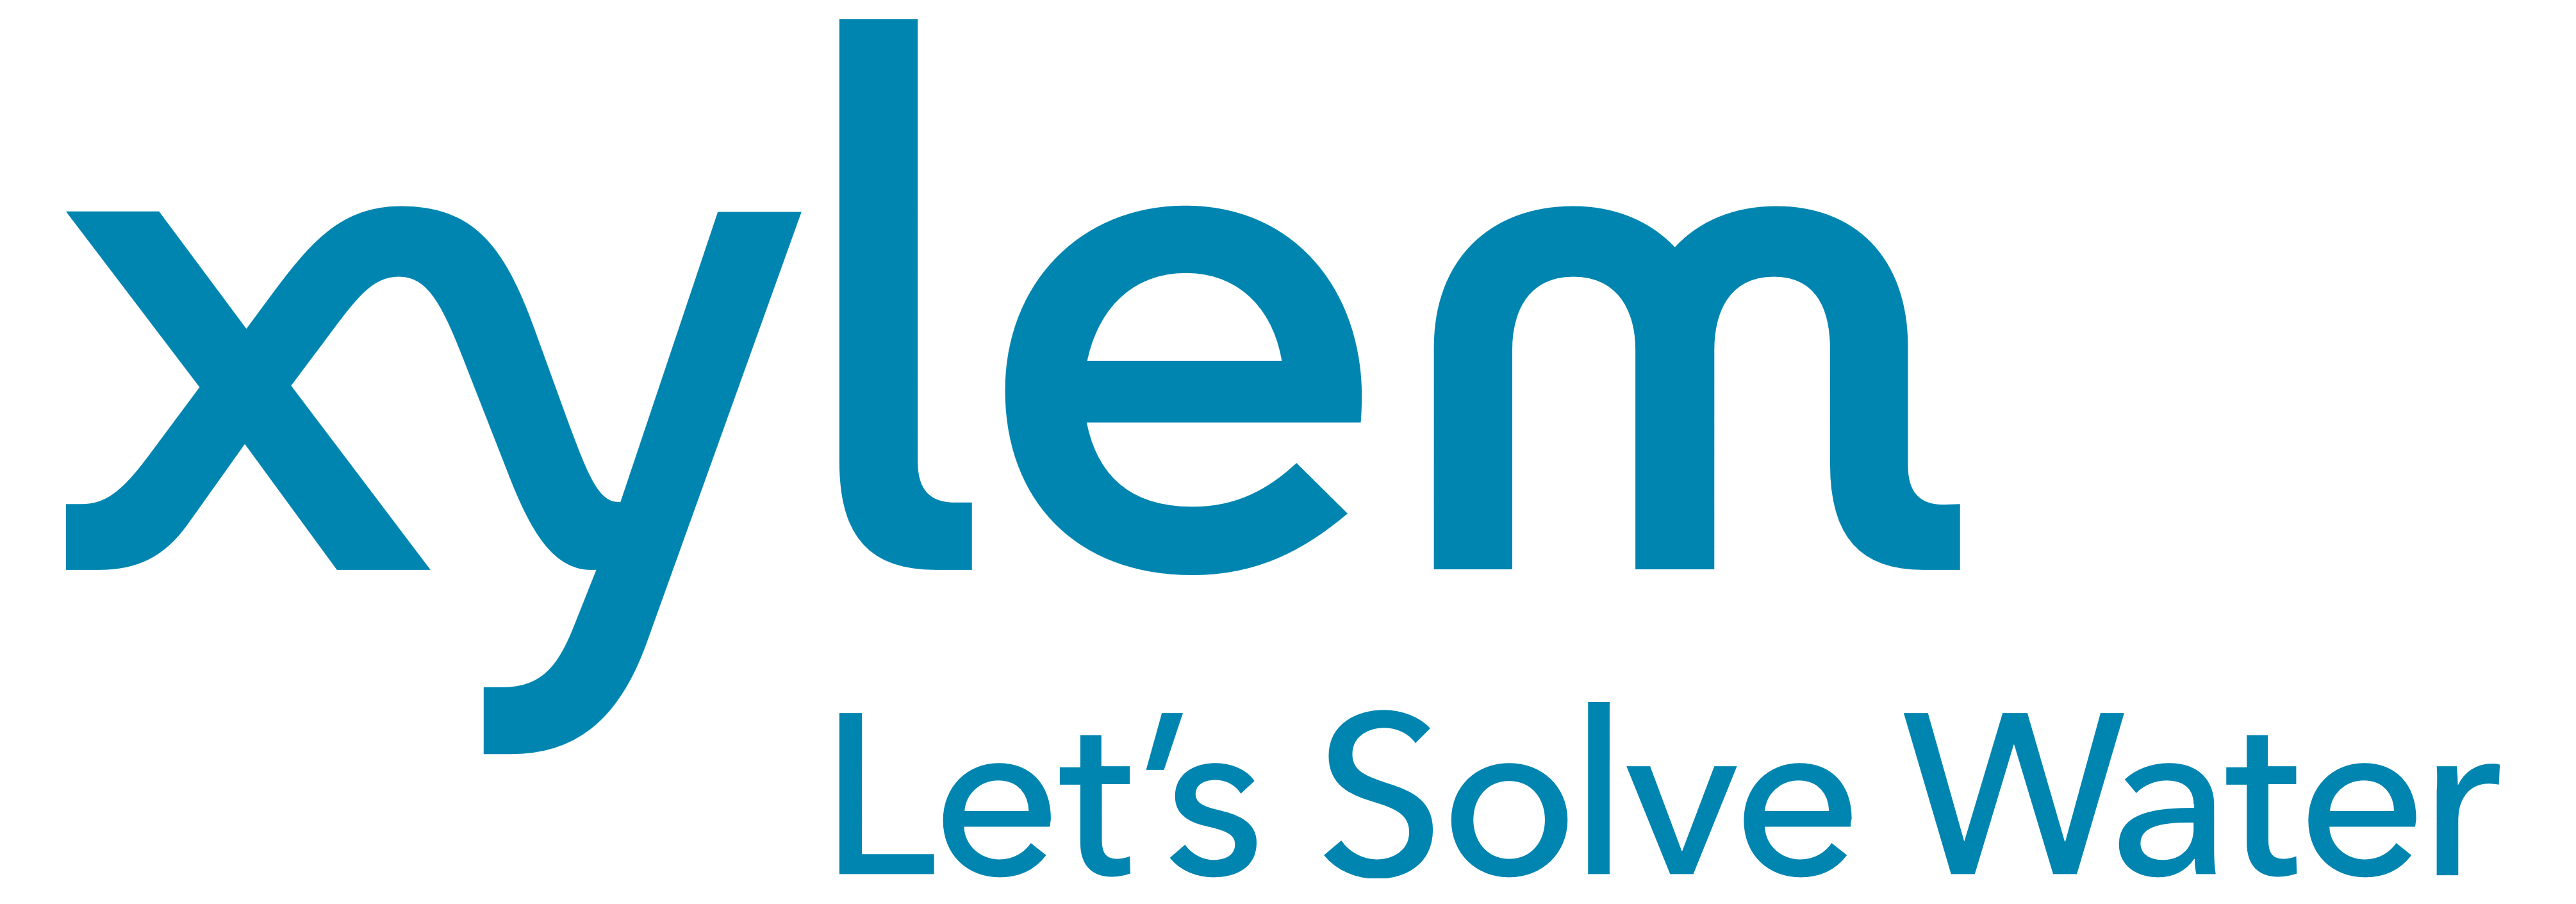 Xylem logo, logotype